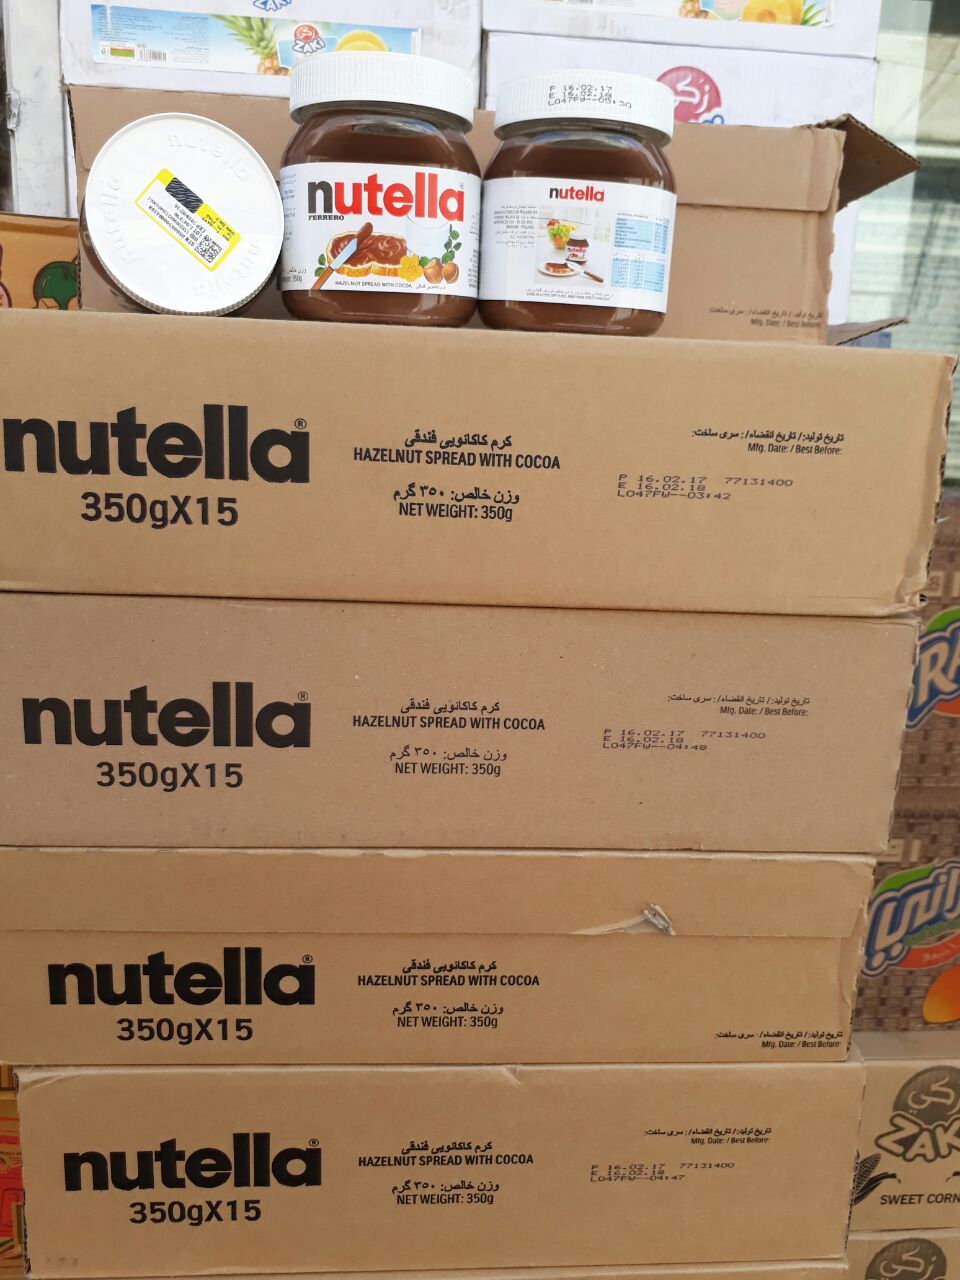 خرید نوتلا Nutella اورجینال و شرکتی به قیمت عمده خرید نوتلا Nutella اورجینال و شرکتی به قیمت عمده | بهترین مارک نوتلا | واردکننده اصلی نوتلا | پخش کننده نوتلا به قیمت عمده | خرید نوتلا شرکتی | خرید عمده نوتلا اصلی